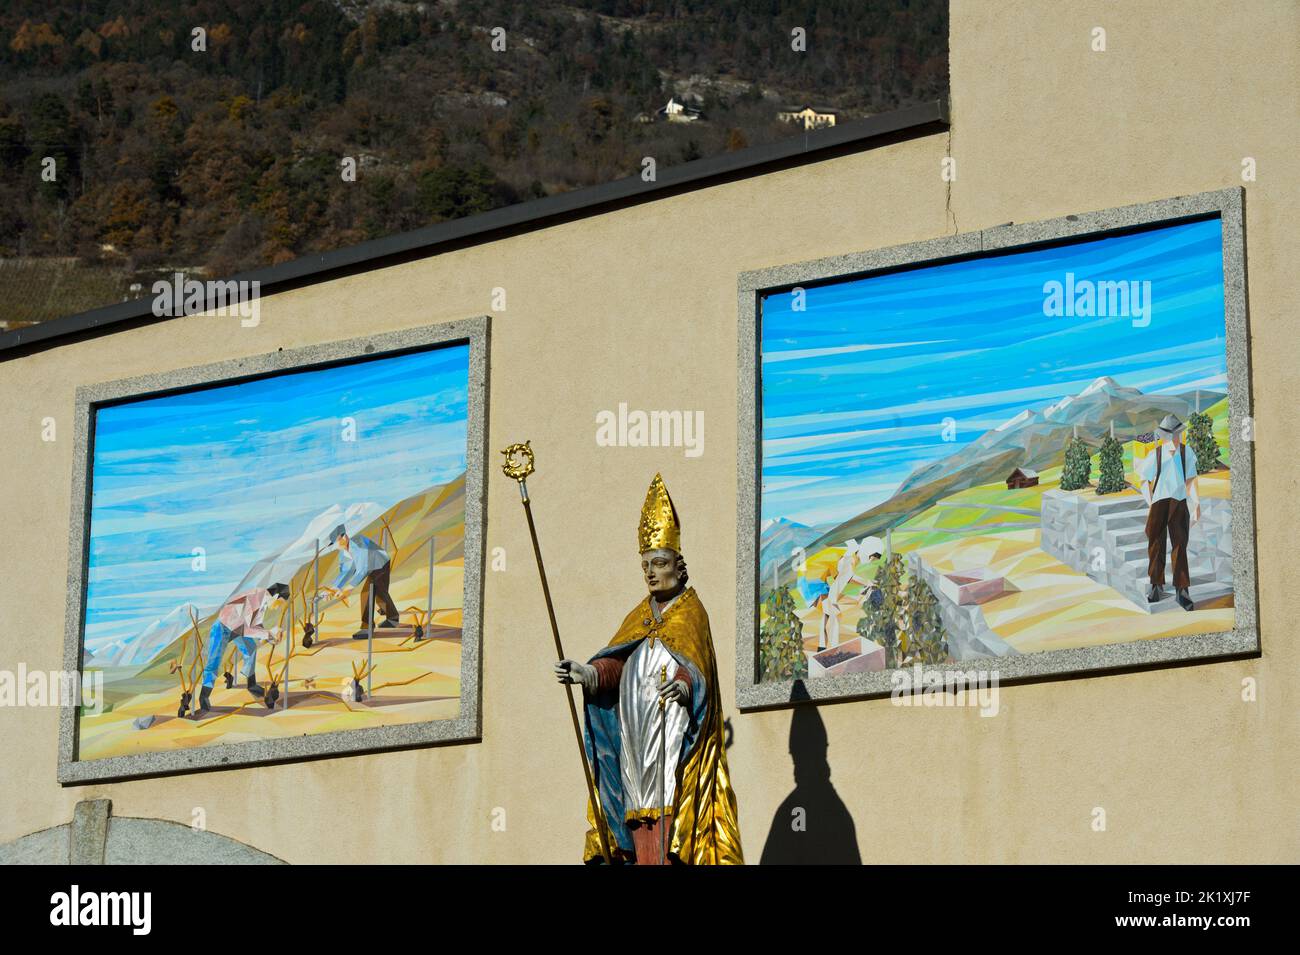 Statue de Saint-Théodul, patron des vignerons, devant des peintures avec des scènes de viticulture à l'ancienne abbaye de Vetroz, Vetroz, Valais, Suisse Banque D'Images